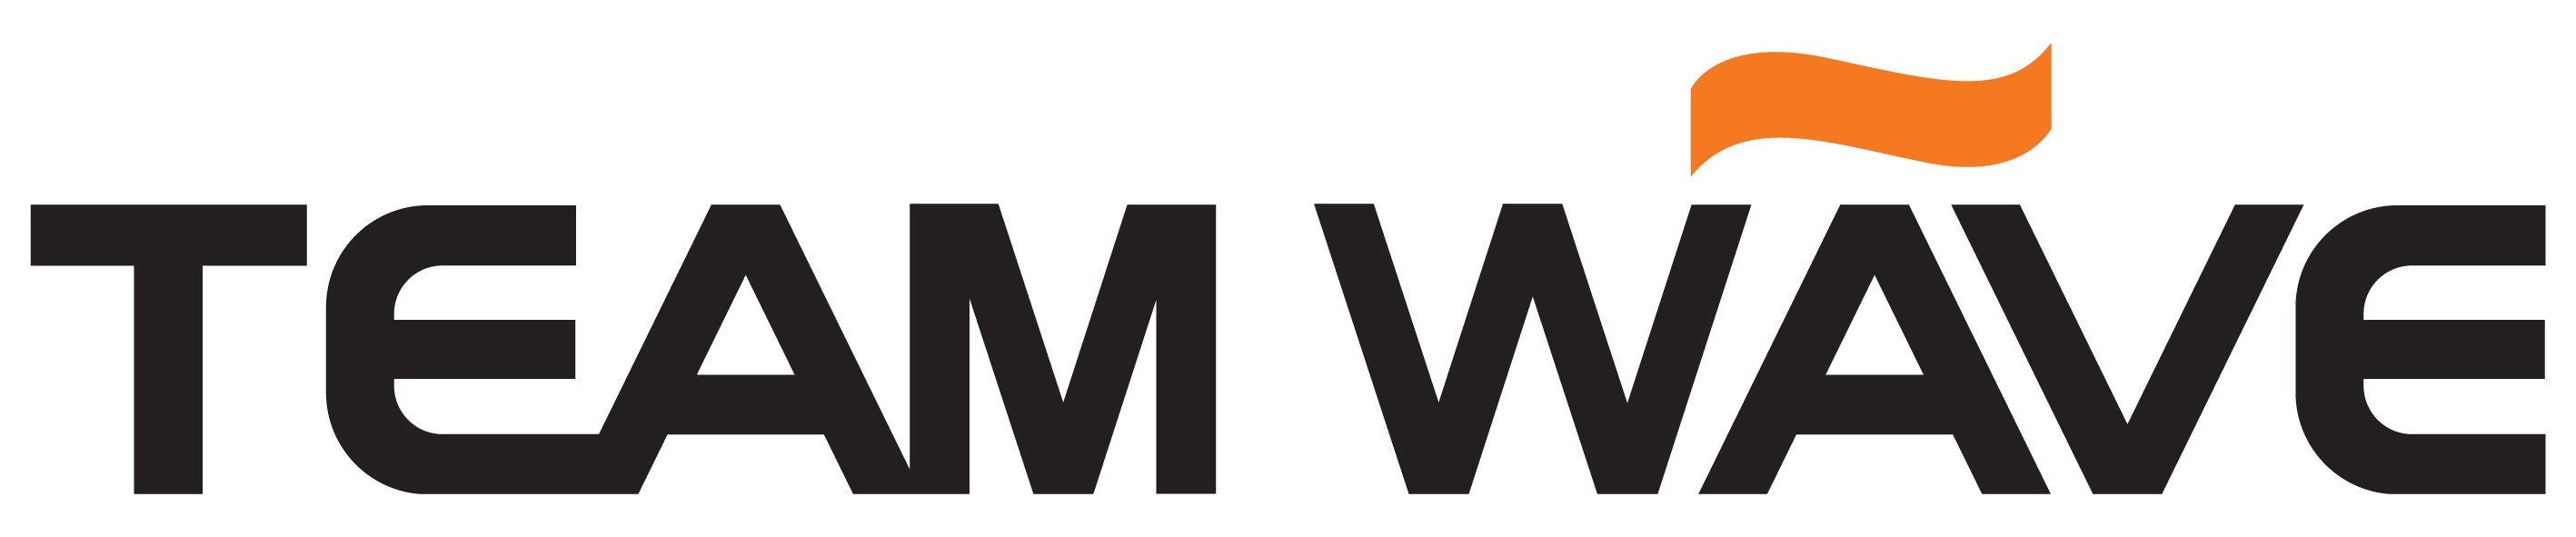 메가존의 계열사 (주)팀웨이브의 로고